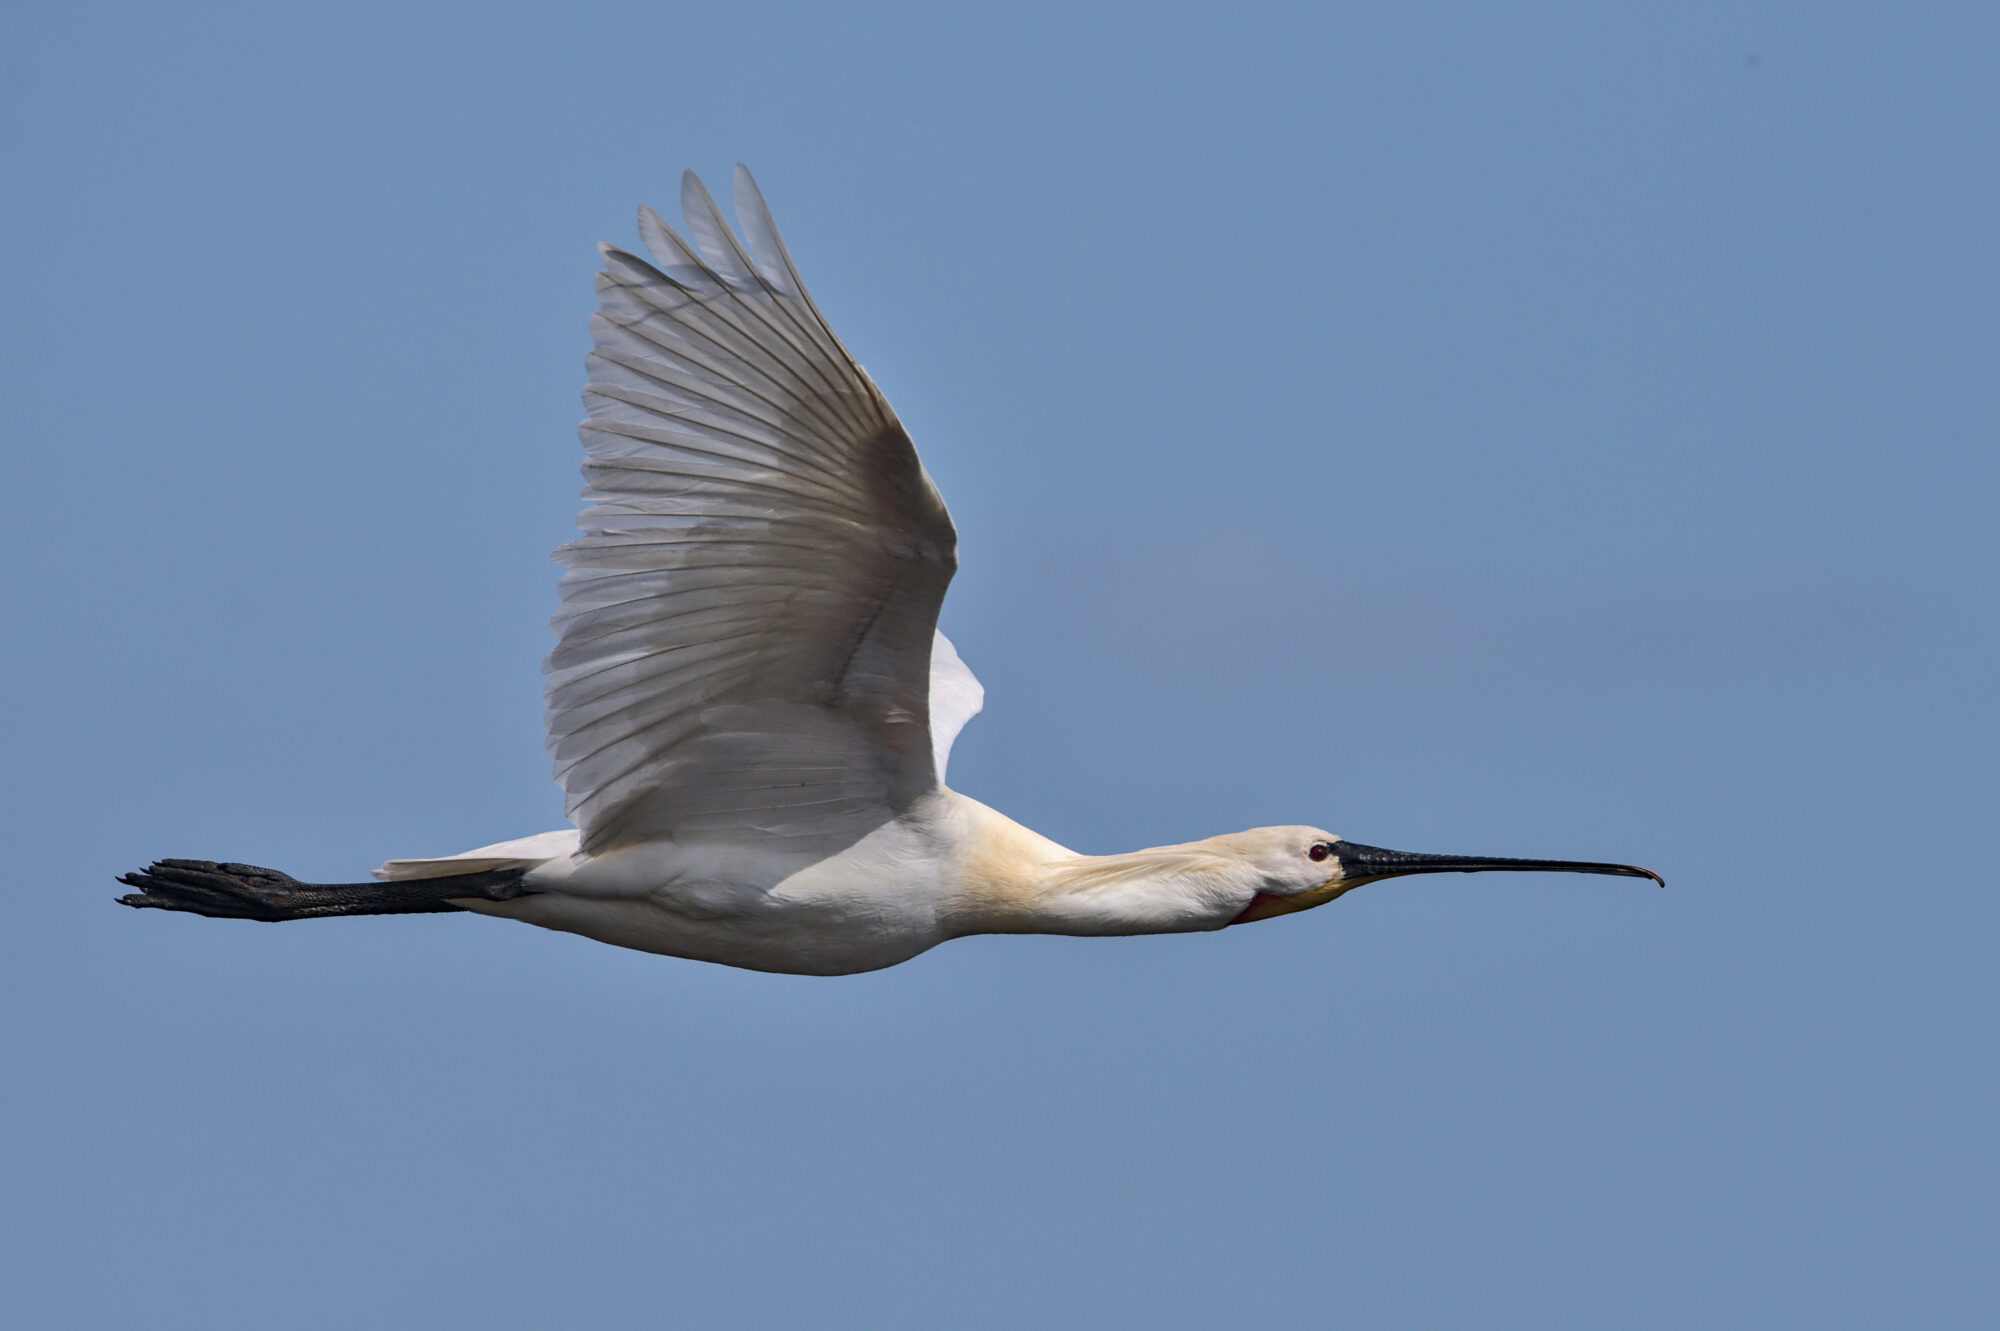 Een witte vogel met zwarte snavel en poten vliegt langgerekt met gespreide vleugels door de blauwe lucht.